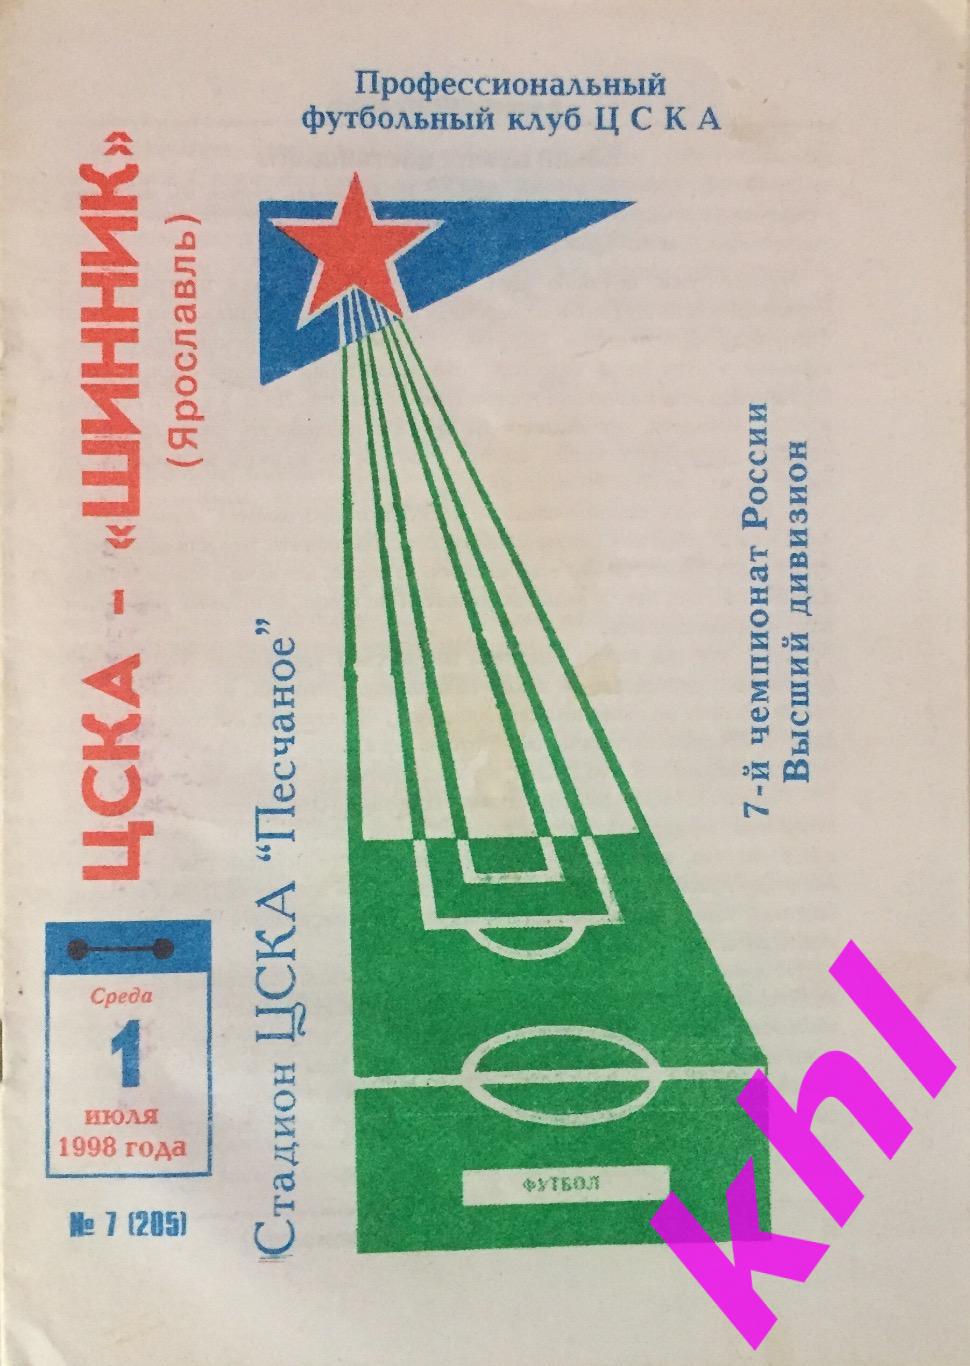 ЦСКА Москва - Шинник Ярославль 1 июля 1998